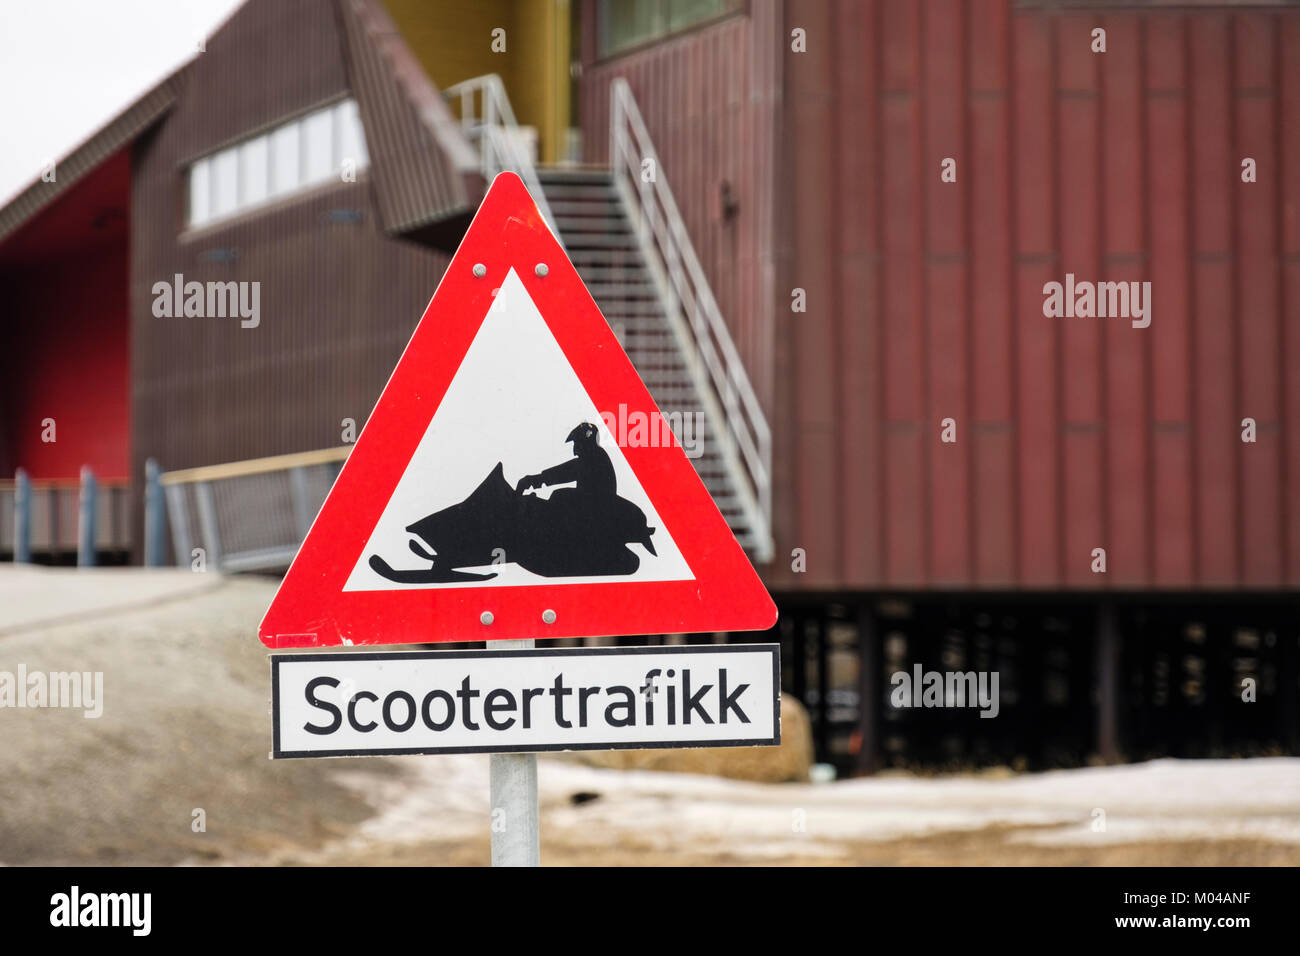 Scootertrafikk triangle rouge signe de route de motoneige d'avertissement des scooters. Longyearbyen, Spitzberg, l'île de Svalbard, Norvège, Scandinavie Banque D'Images